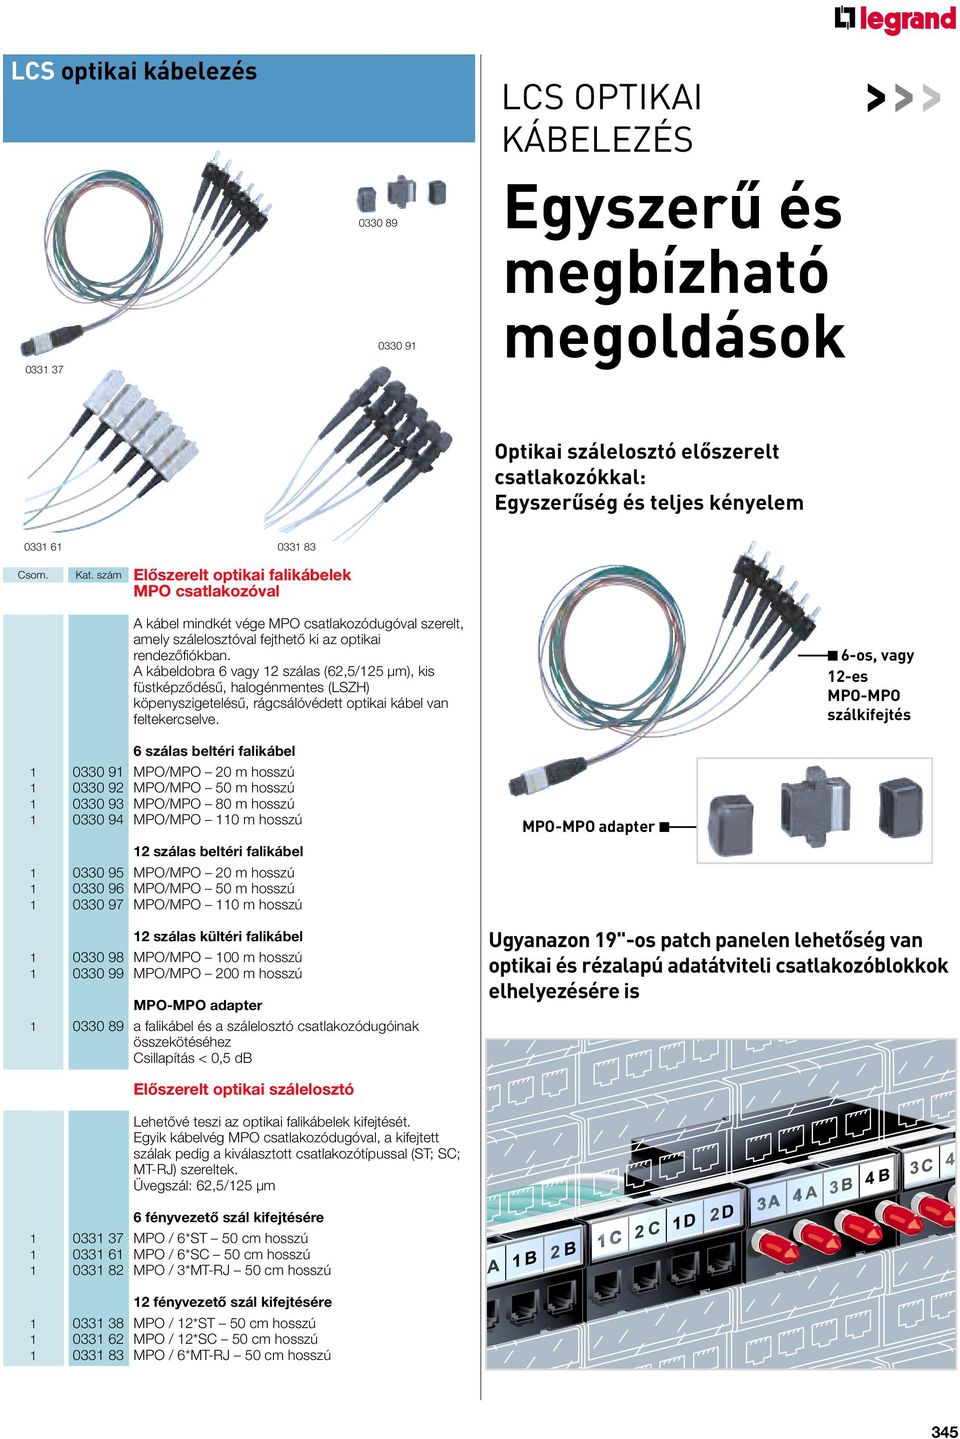 A kábeldobra 6 vagy 12 szálas (62,5/125 µm), kis füstképzôdésû, halogénmentes (LSZH) köpenyszigetelésû, rágcsálóvédett optikai kábel van feltekercselve.